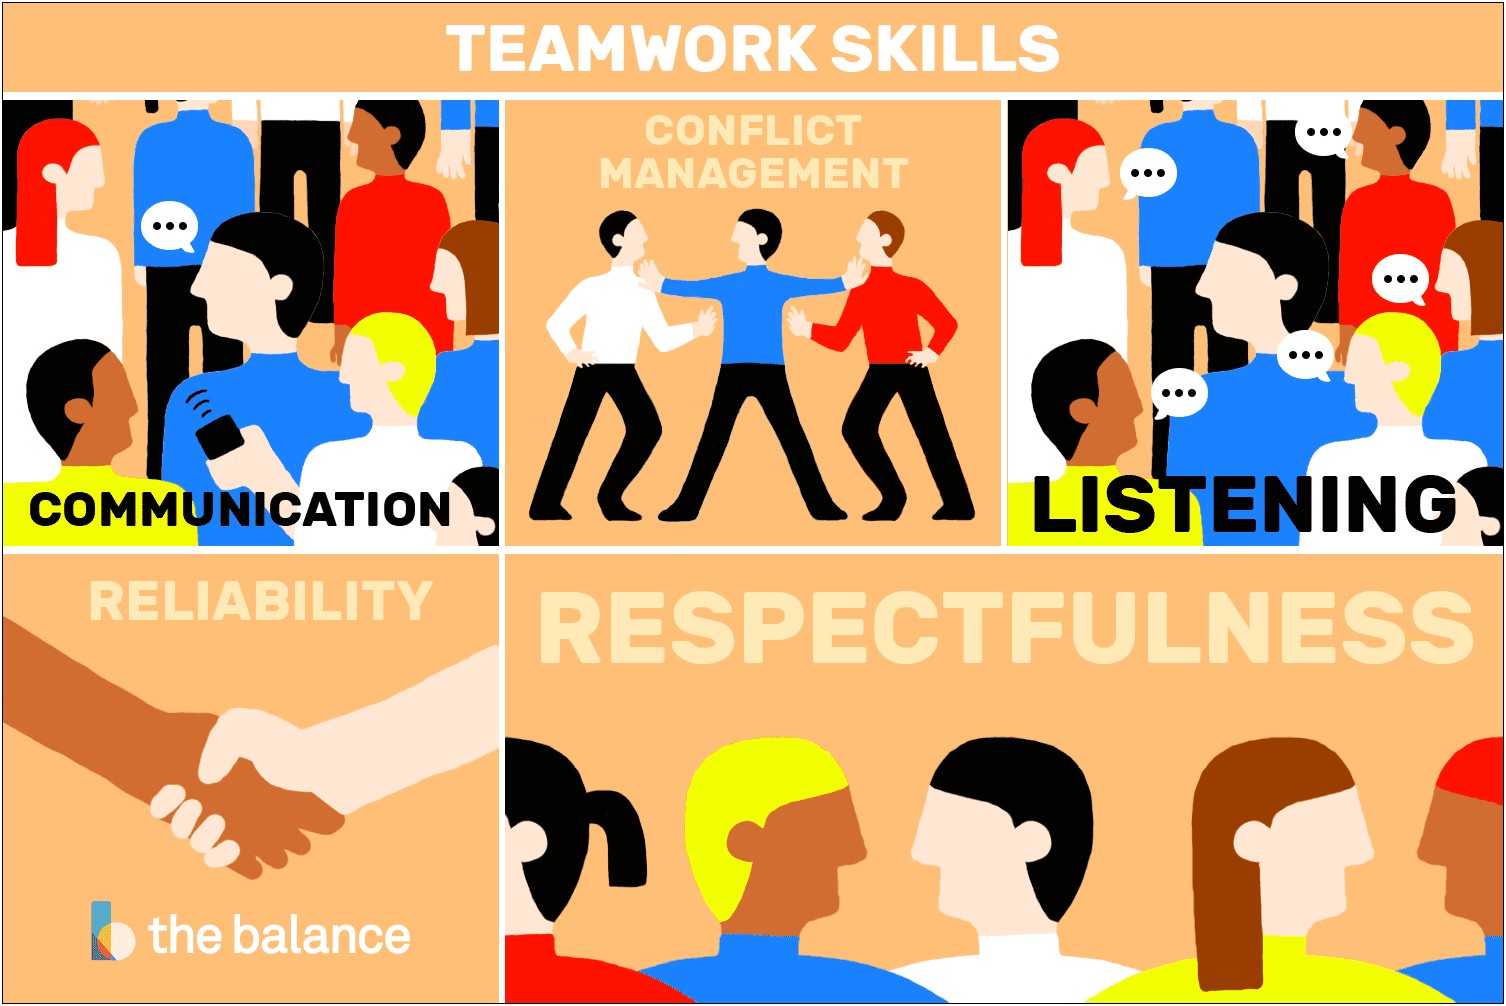 Leadership Team Work Skills Resume